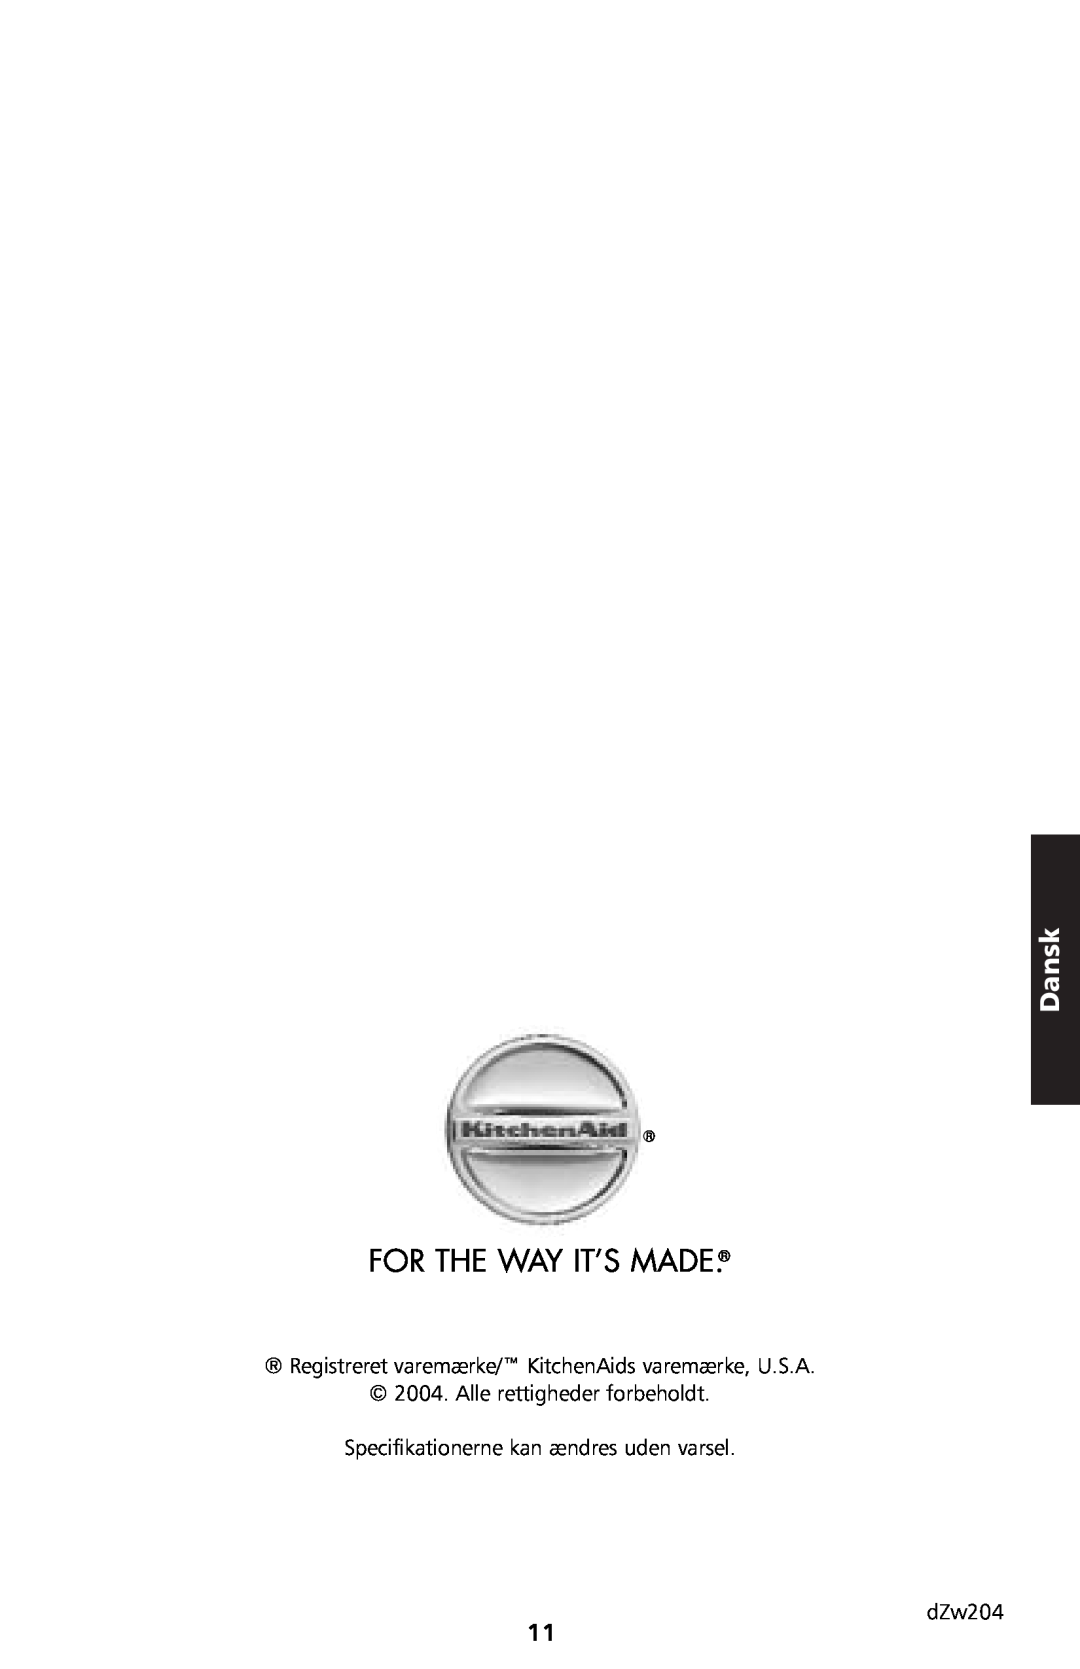 KitchenAid 5KTT890 manual For The Way It’S Made, Dansk, Specifikationerne kan ændres uden varsel dZw204 